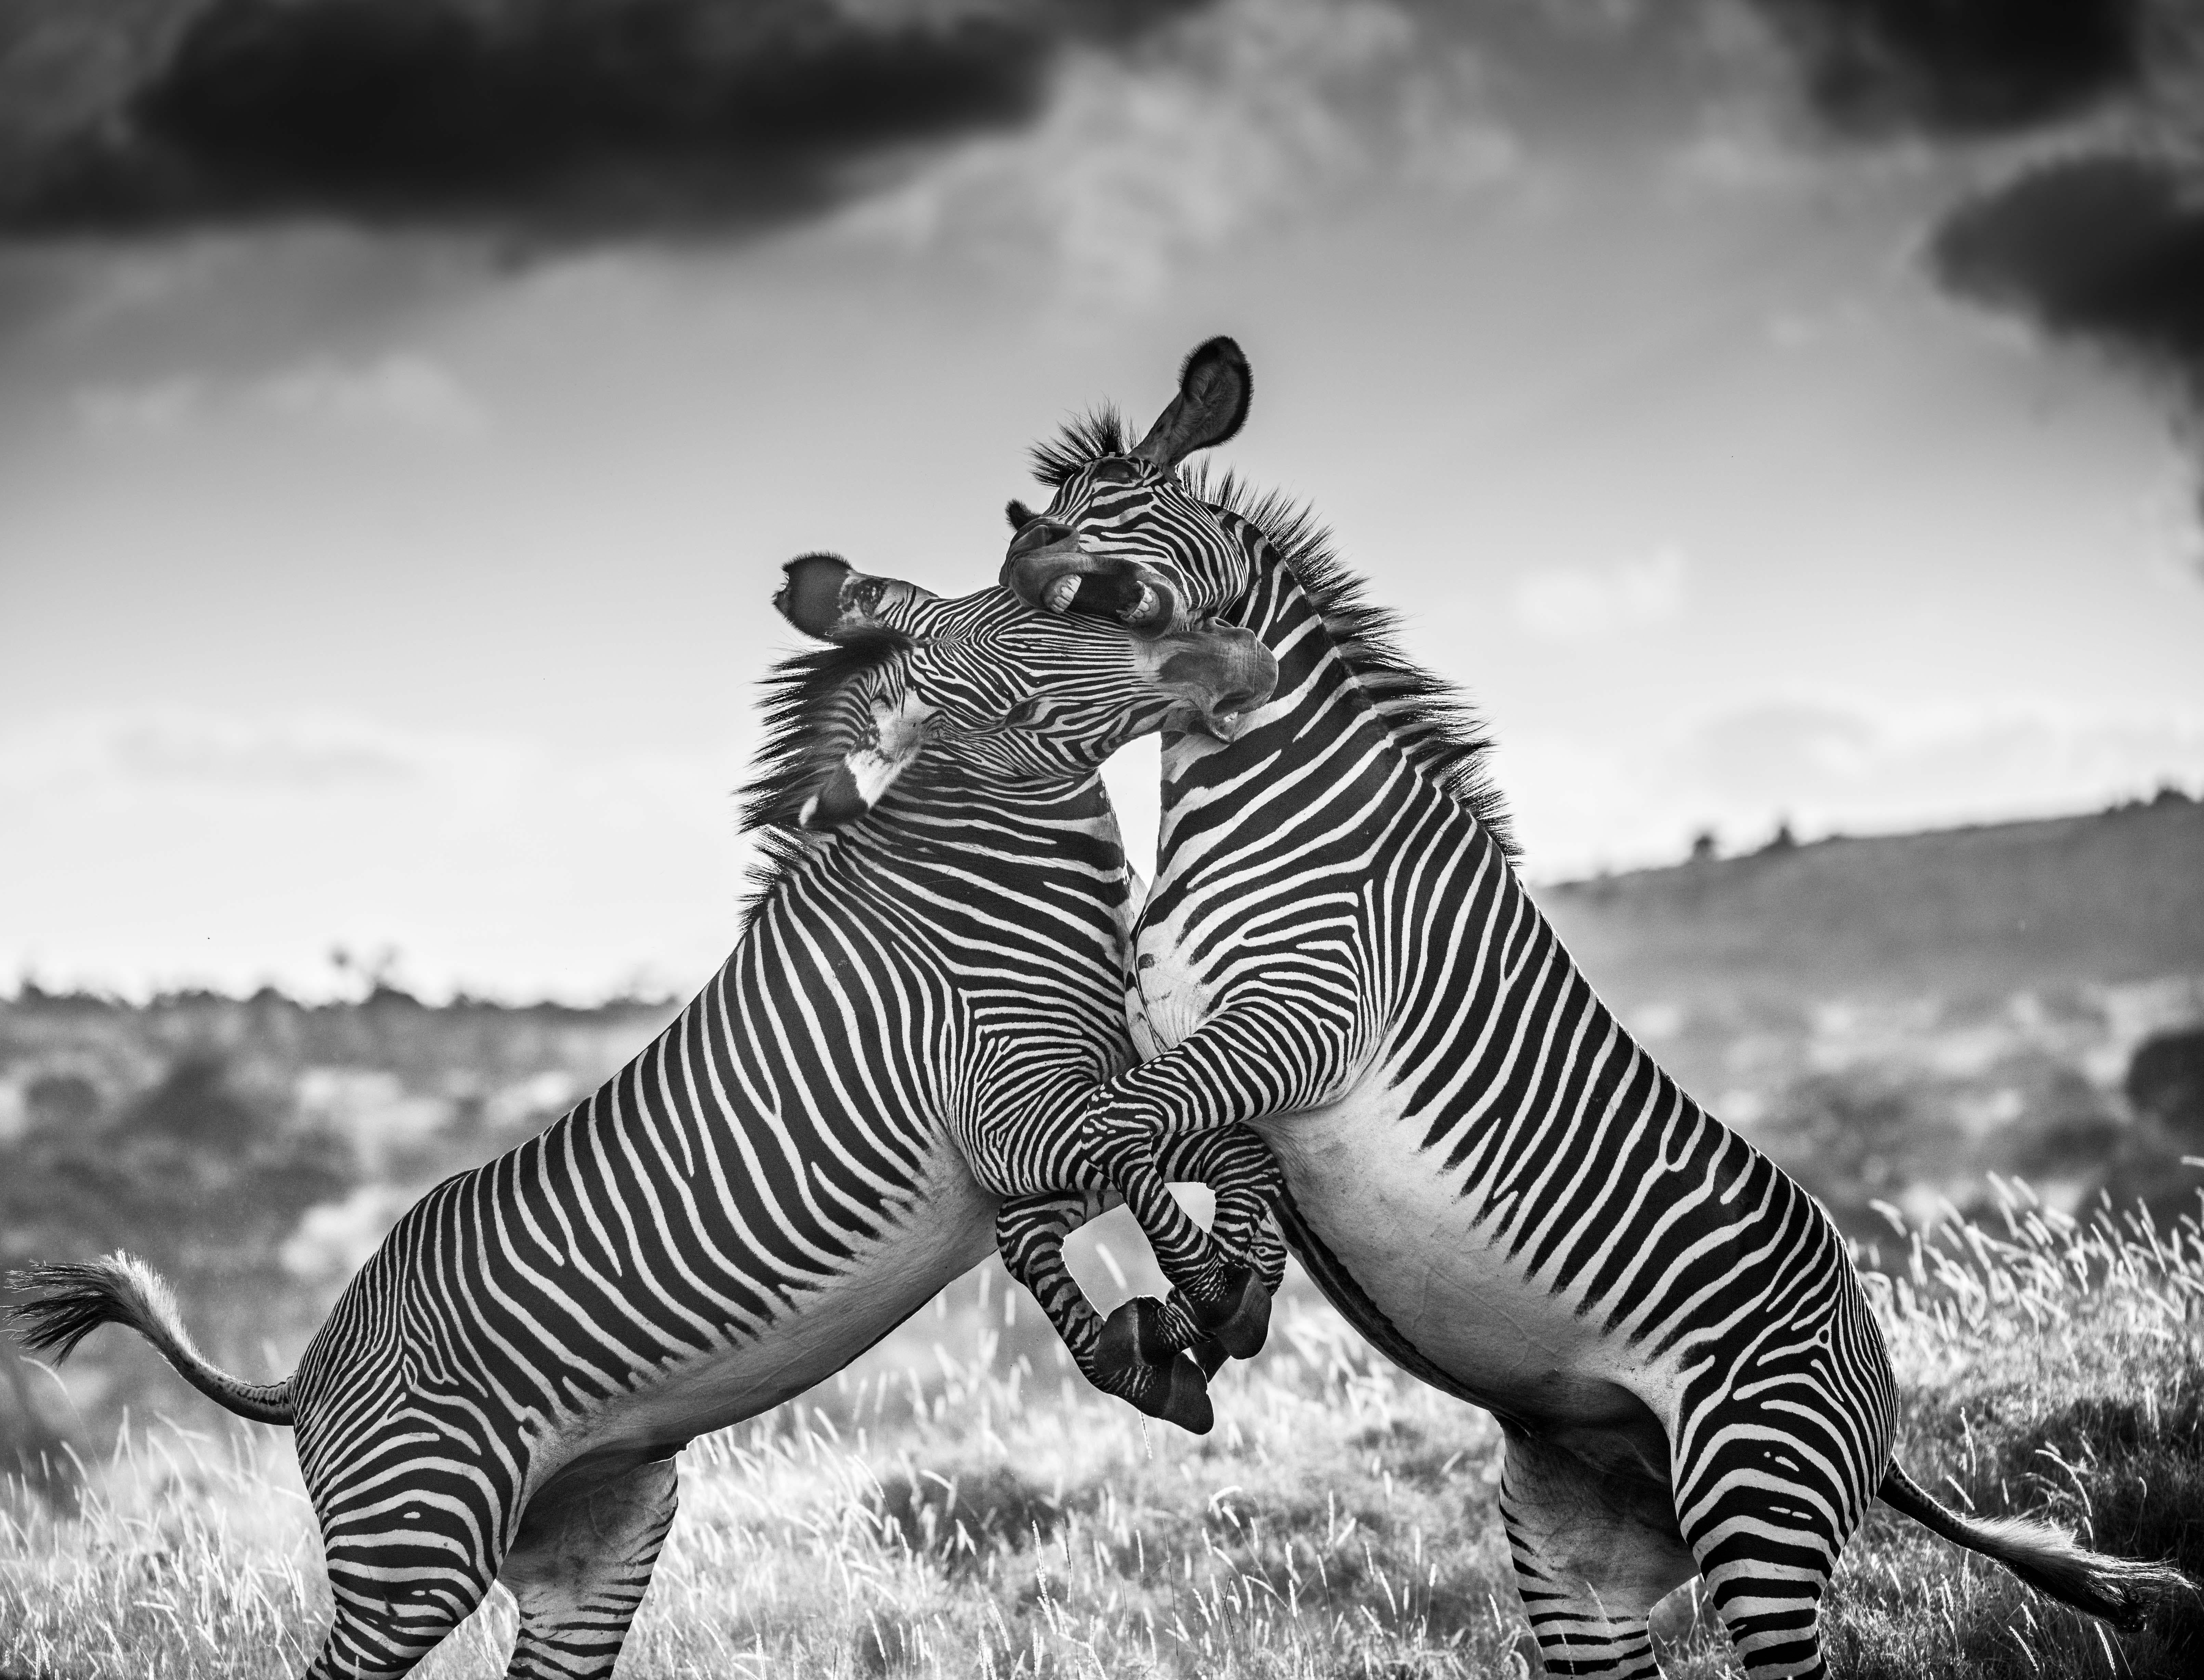 "Fast genau ein Jahr, nachdem ich eines meiner stärksten Bilder, "Drought", aufgenommen hatte, fand ich mein Objektiv erneut in Richtung zweier kämpfender Zebras gerichtet. Es gibt deutliche Ähnlichkeiten und Unterschiede zwischen den beiden. Die